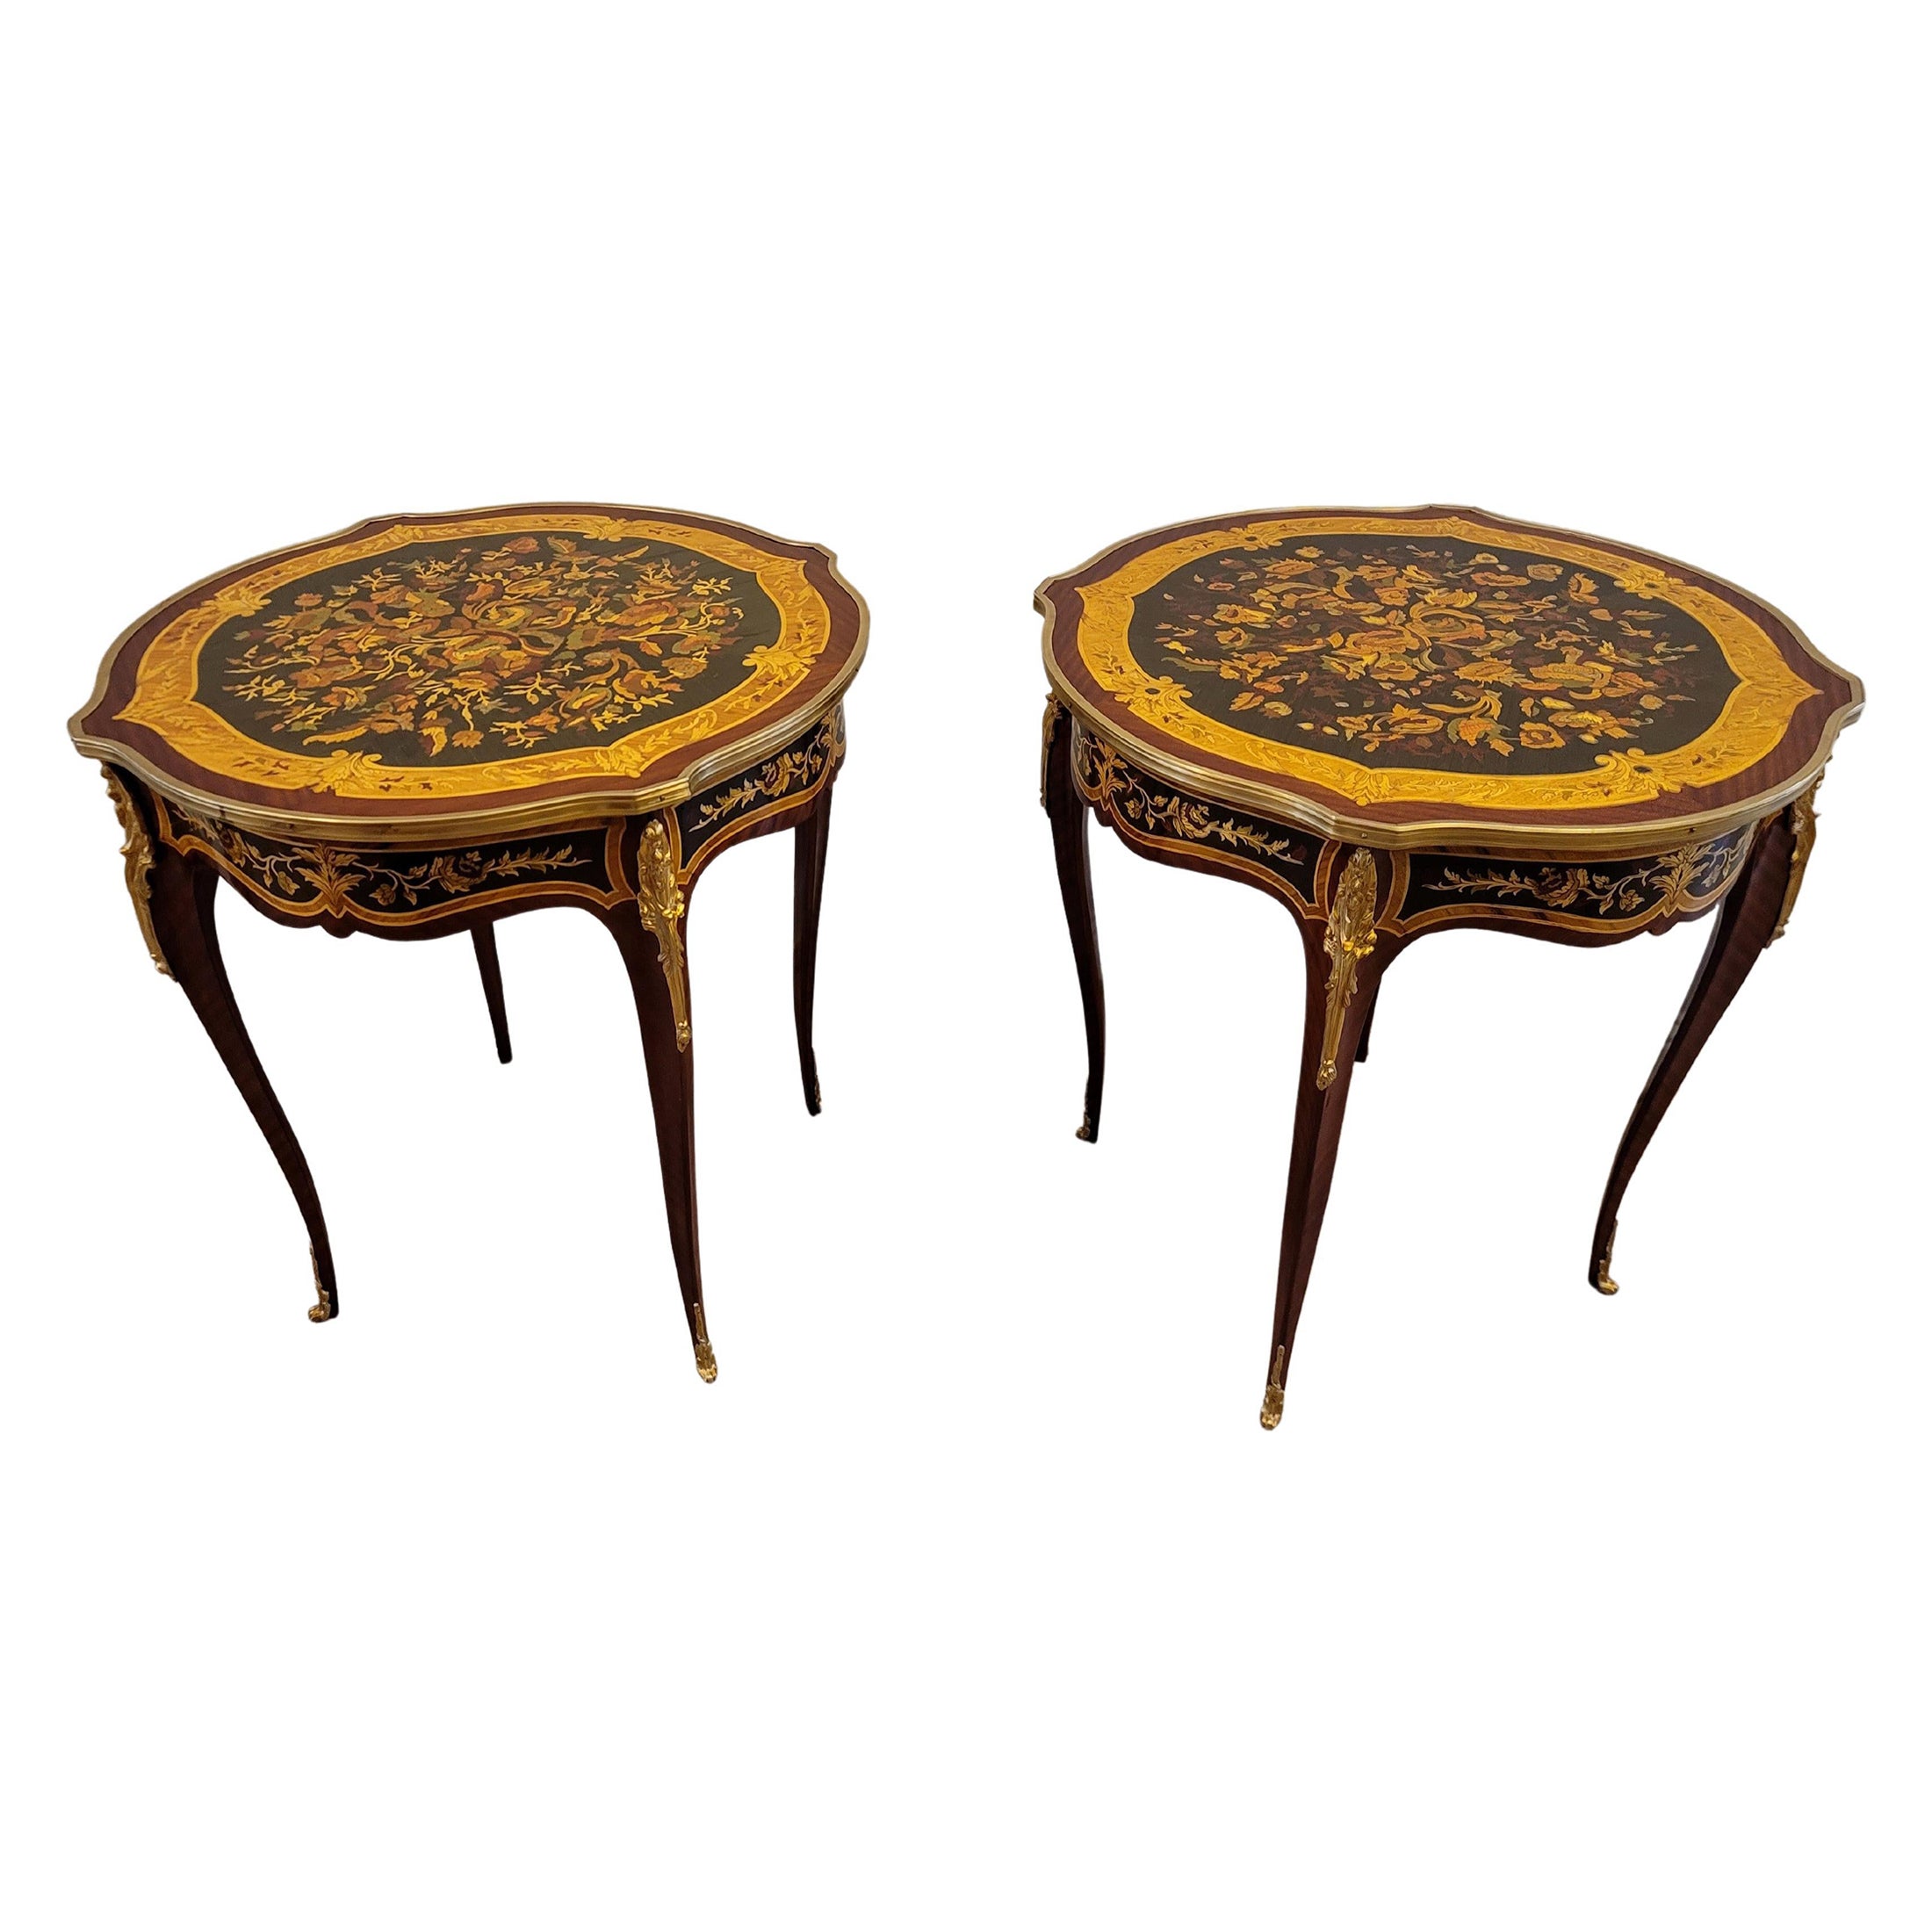 Paire de tables d'appoint françaises de style Louis XV en marqueterie florale montée sur bronze doré